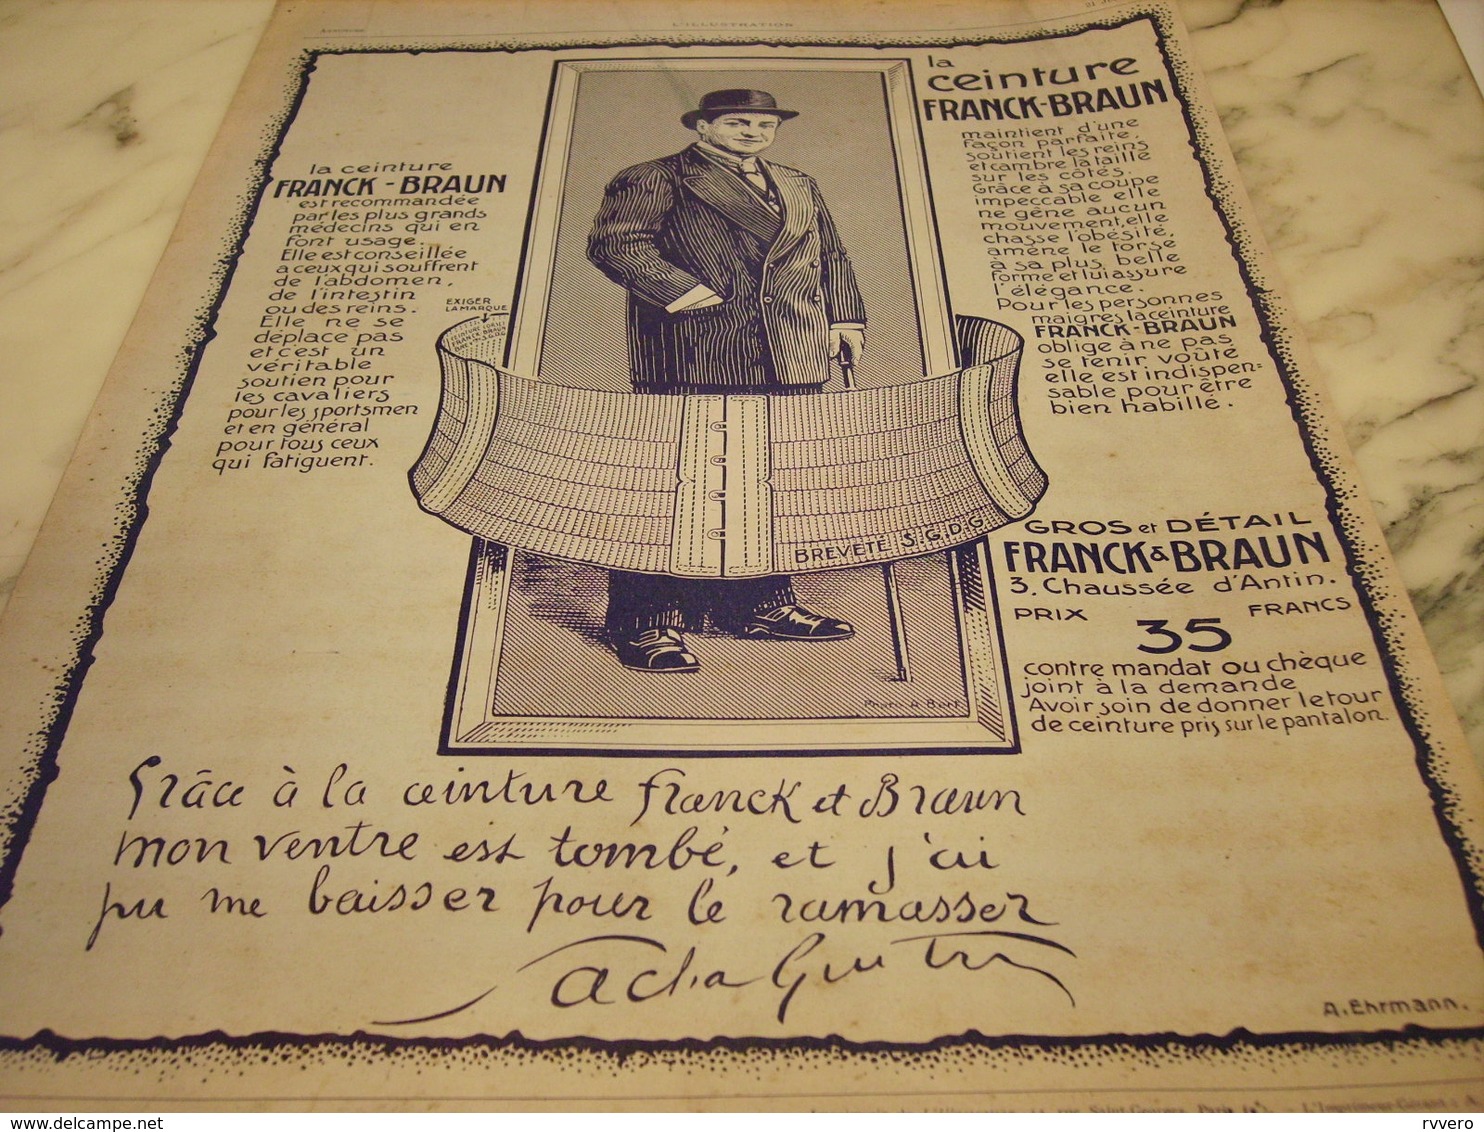 ANCIENNE PUBLICITE CEINTURE DE FRANCK ET BRAUN  SIGNE SACHA GUITRY  1913 - Posters